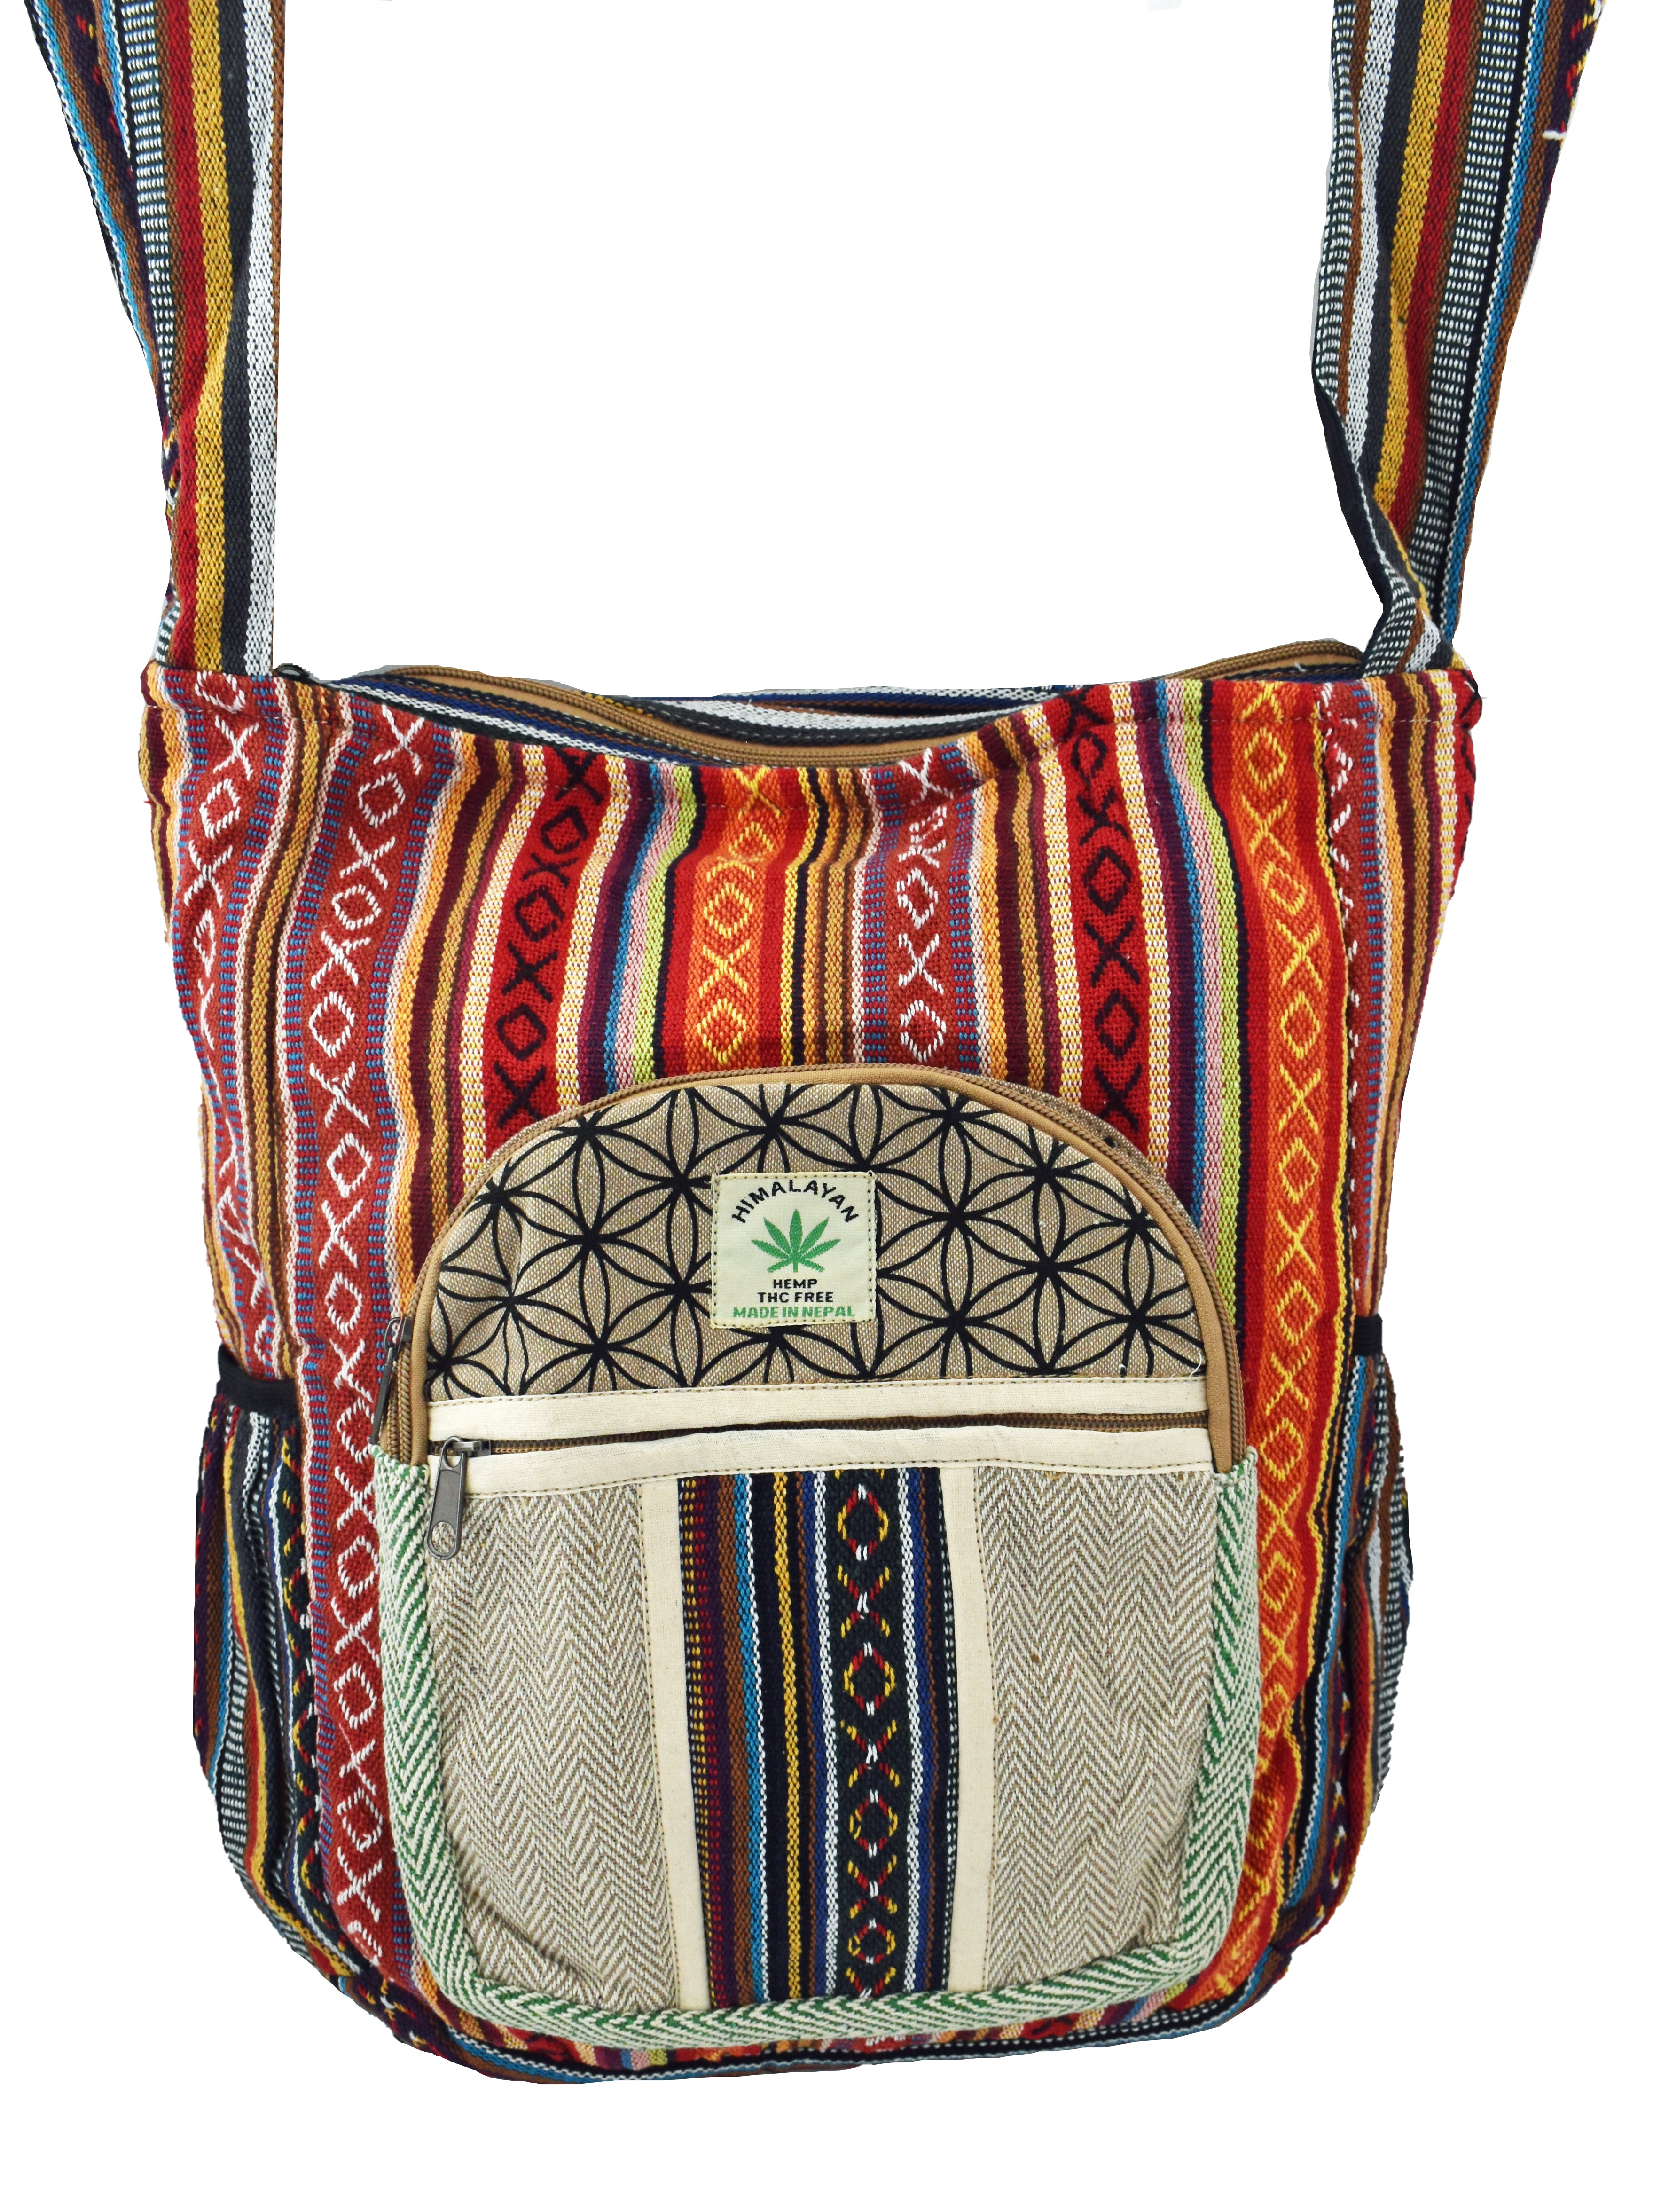 Naga Sadhu Tote Bag by Deepa Singh - Pixels